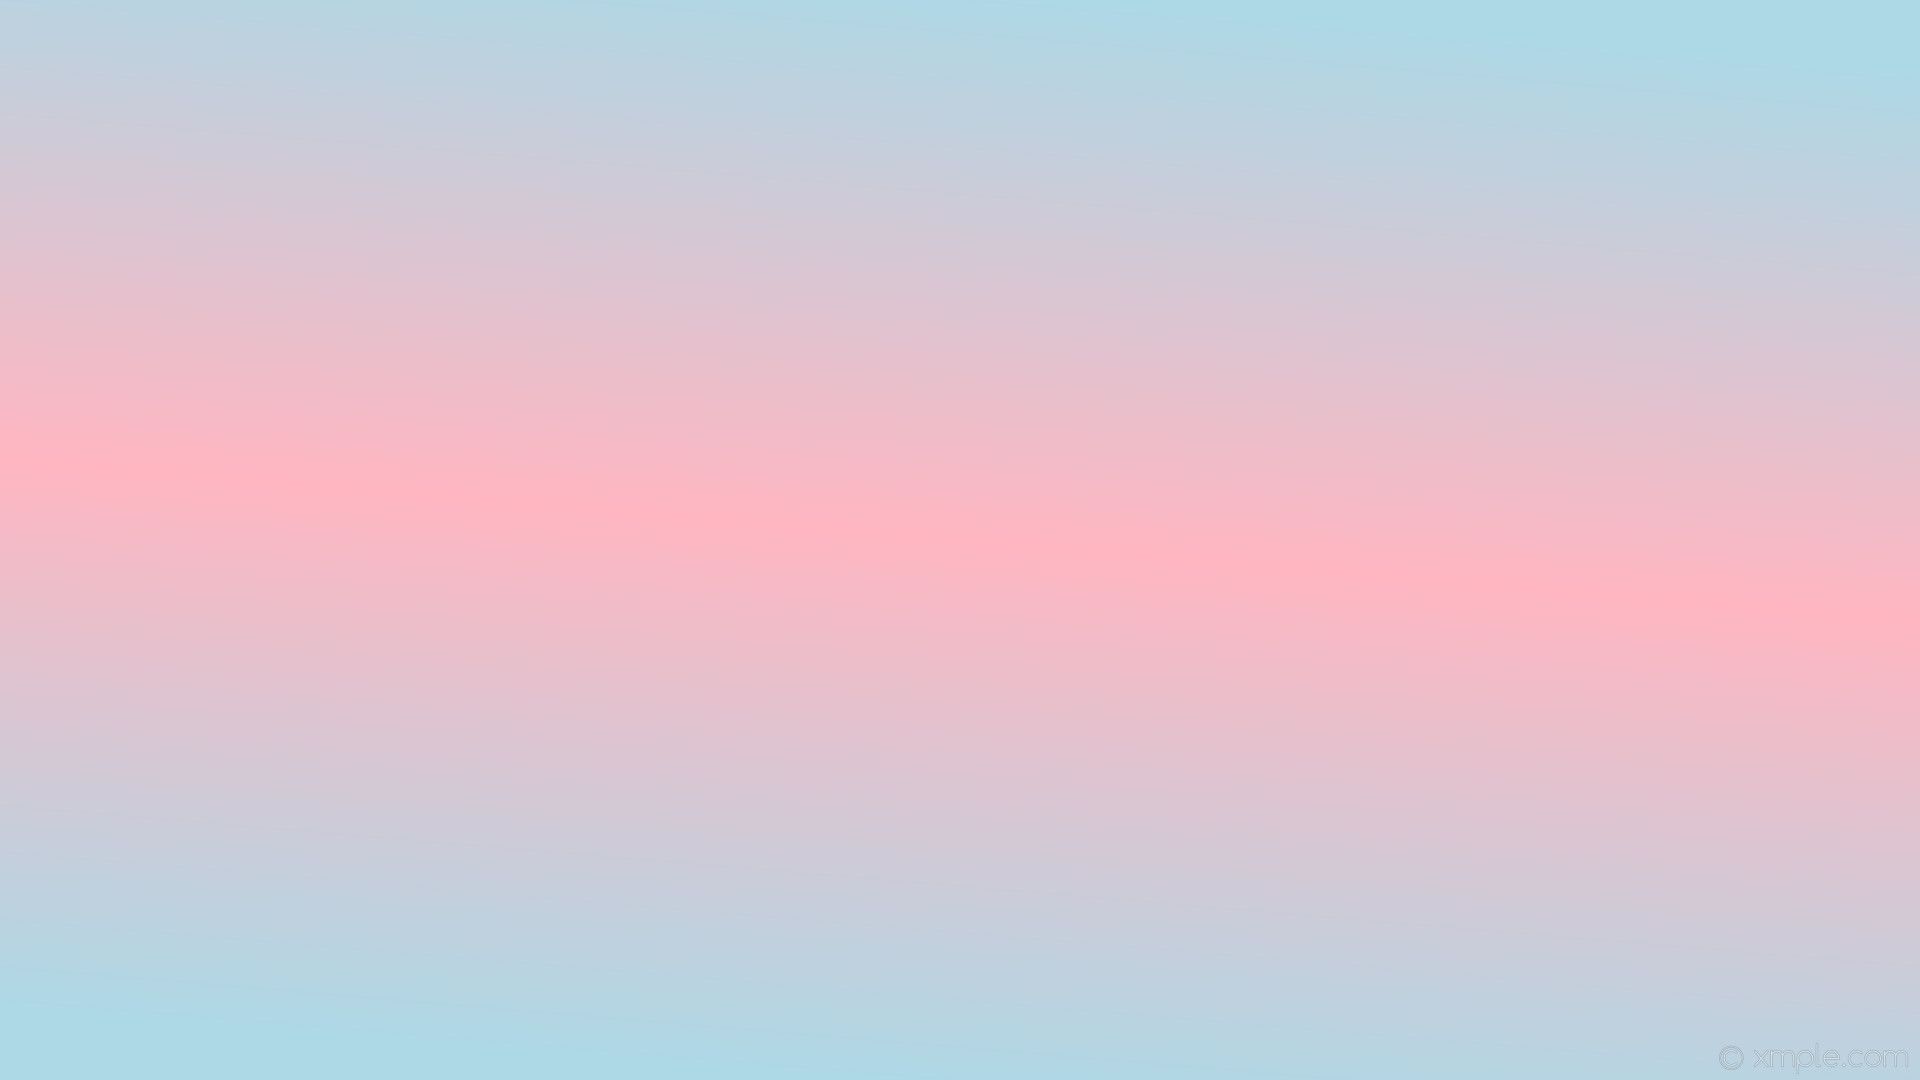 Light Blue And Light Pink Desktop Wallpapers - Wallpaper Cave